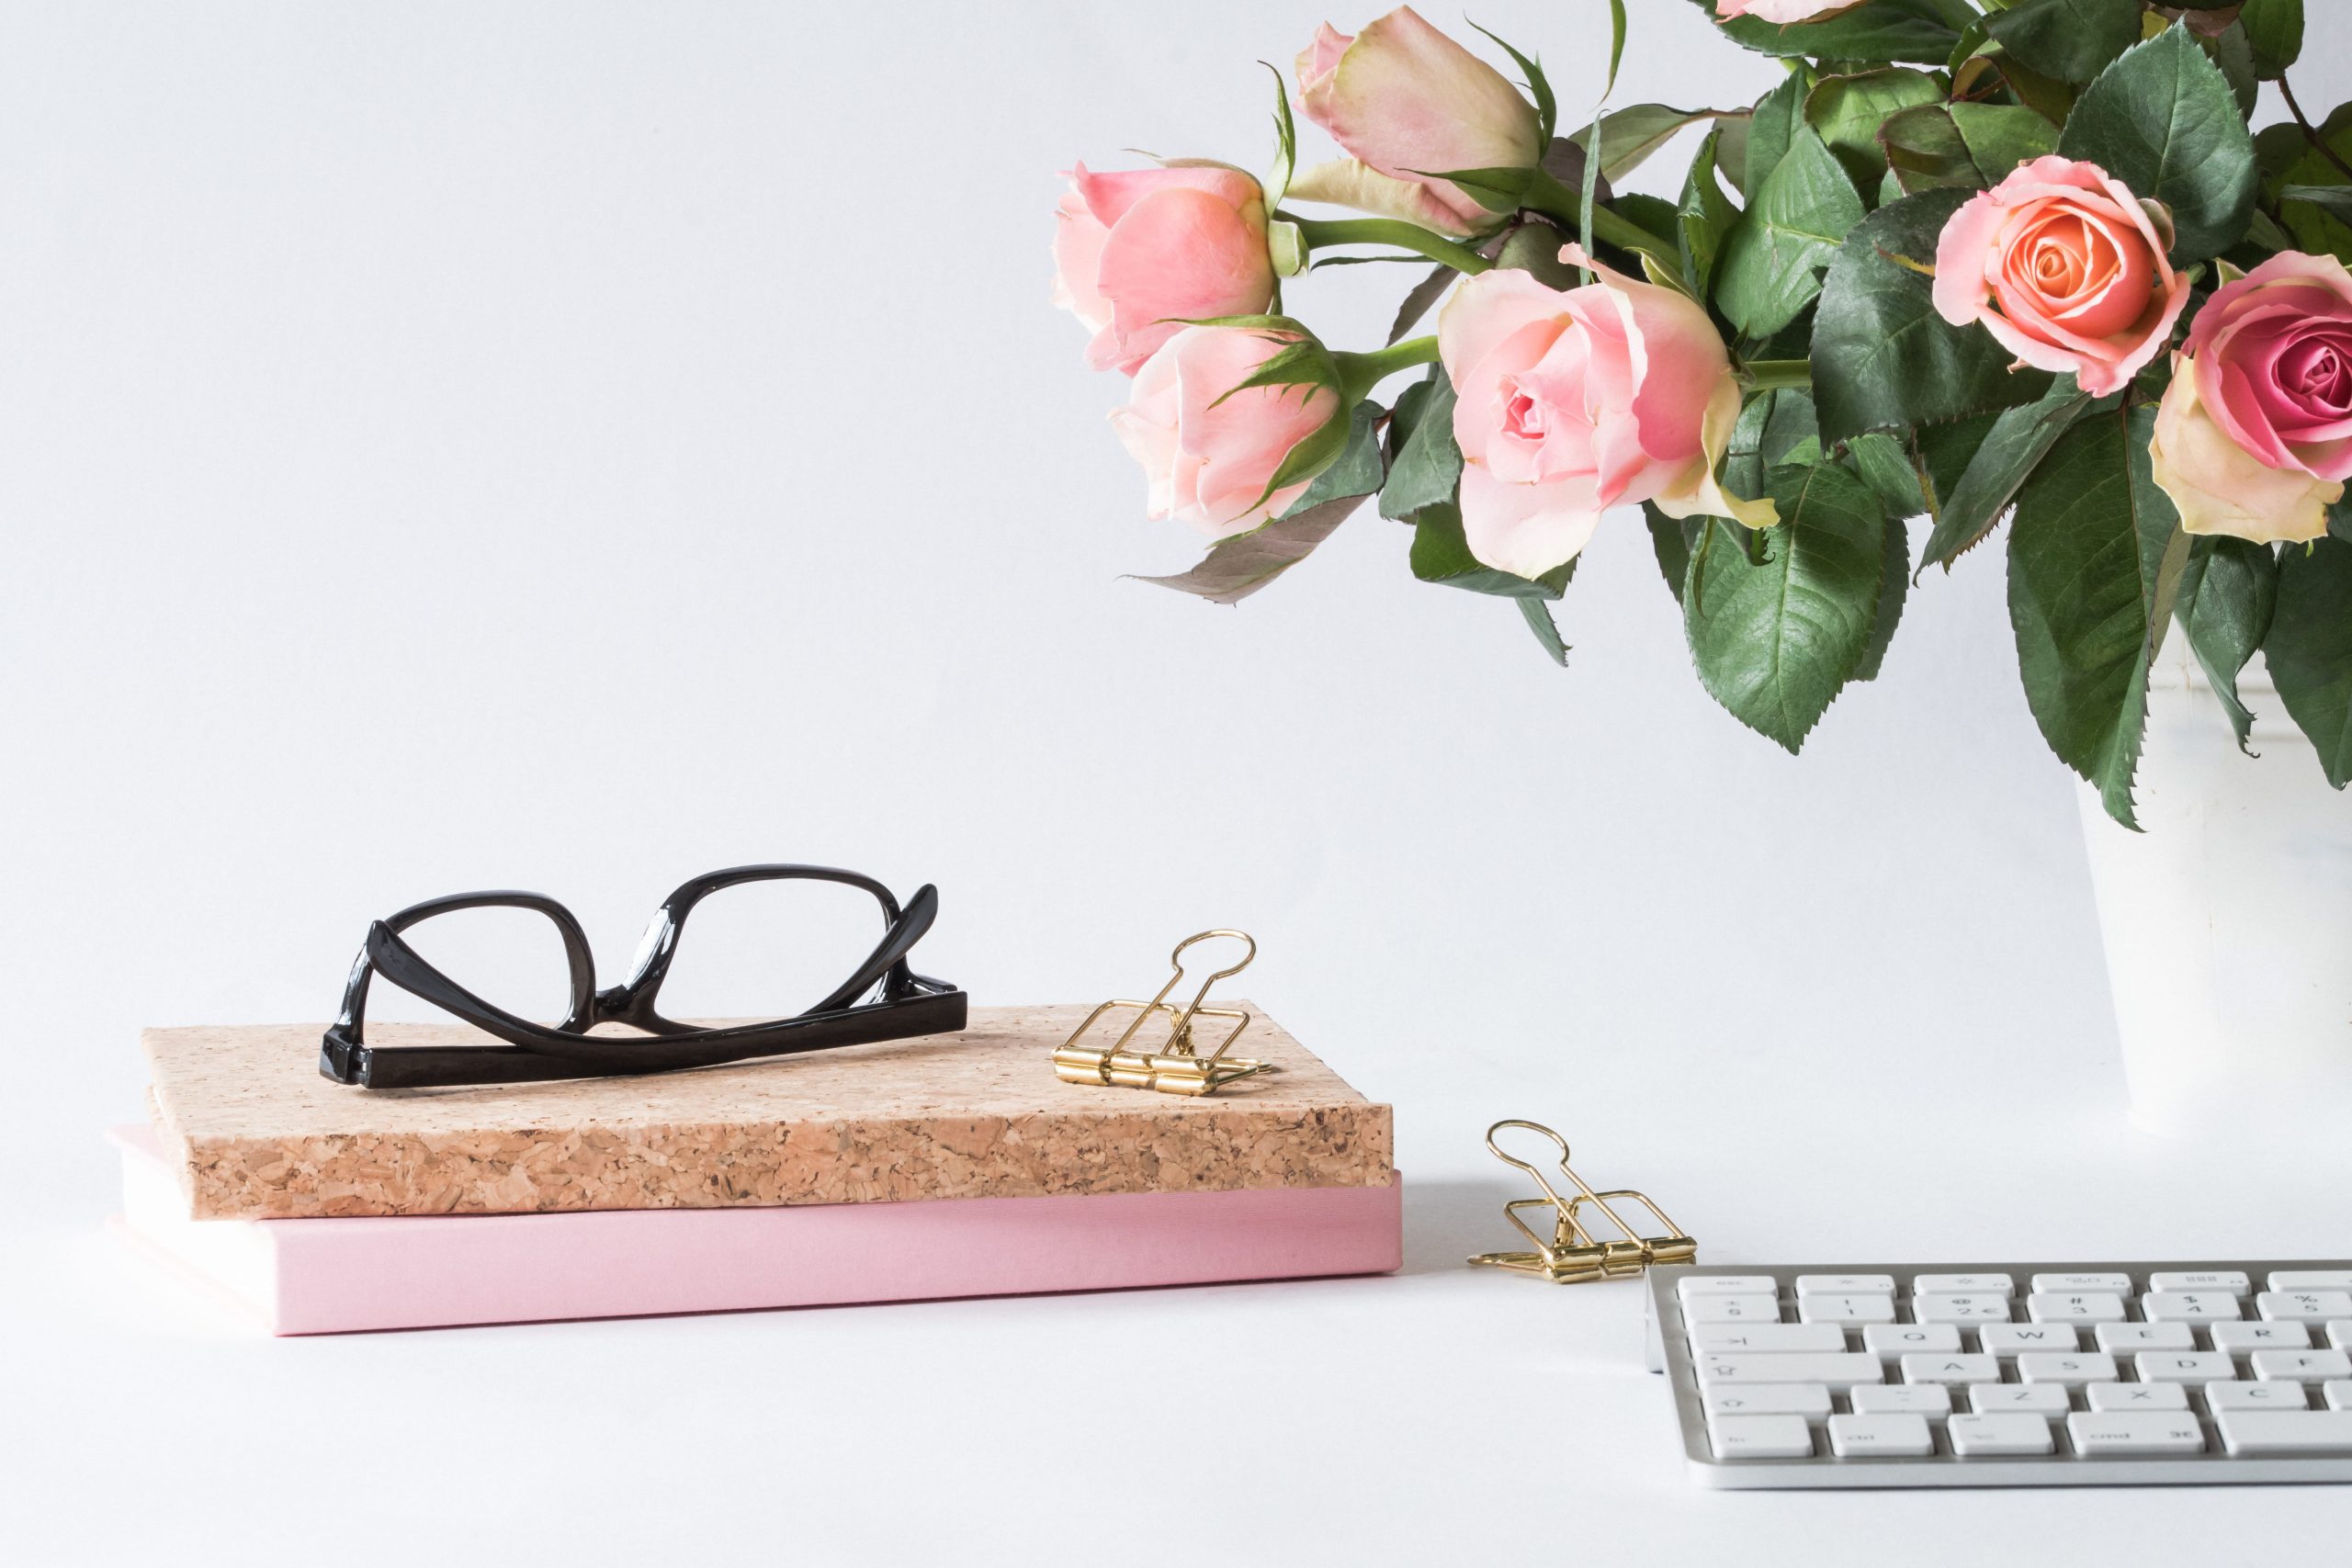 Wallpaper Eyeglasses on Book Beside Rose and Keyboard, bloom, blooming